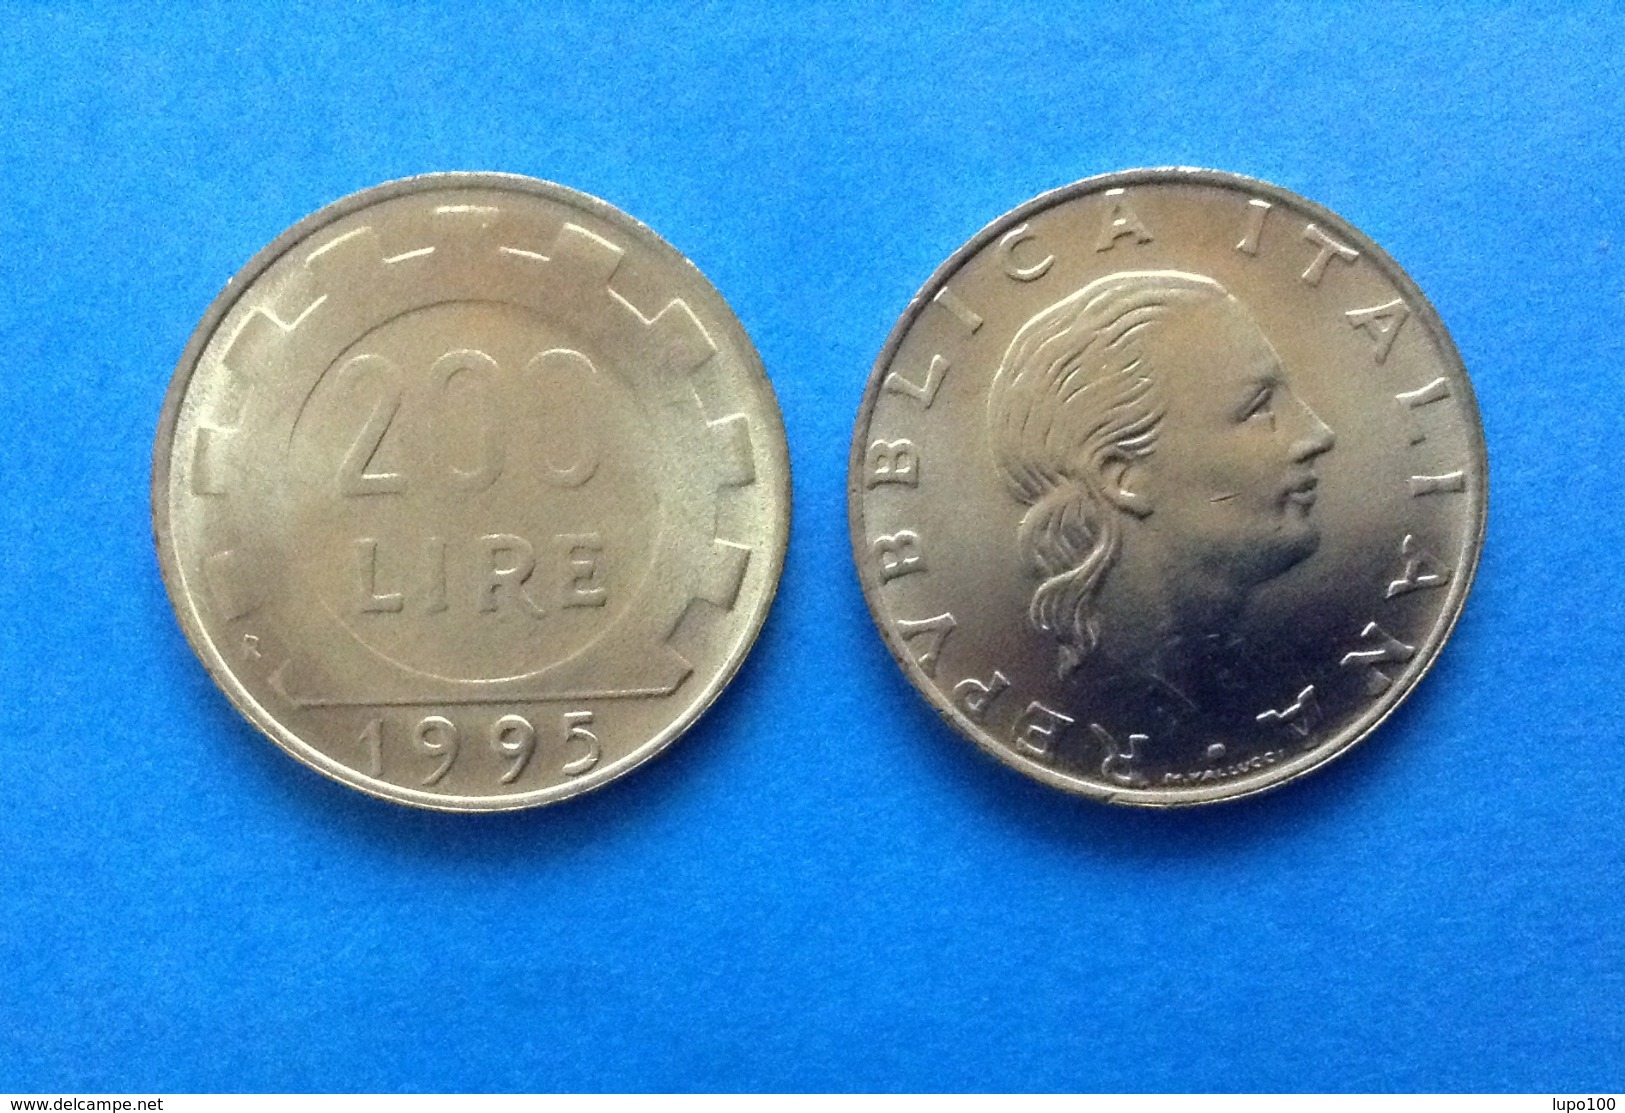 1995 ITALIA REPUBBLICA MONETA DA 200 LIRE FDC UNC DA ROTOLINO - 200 Lire